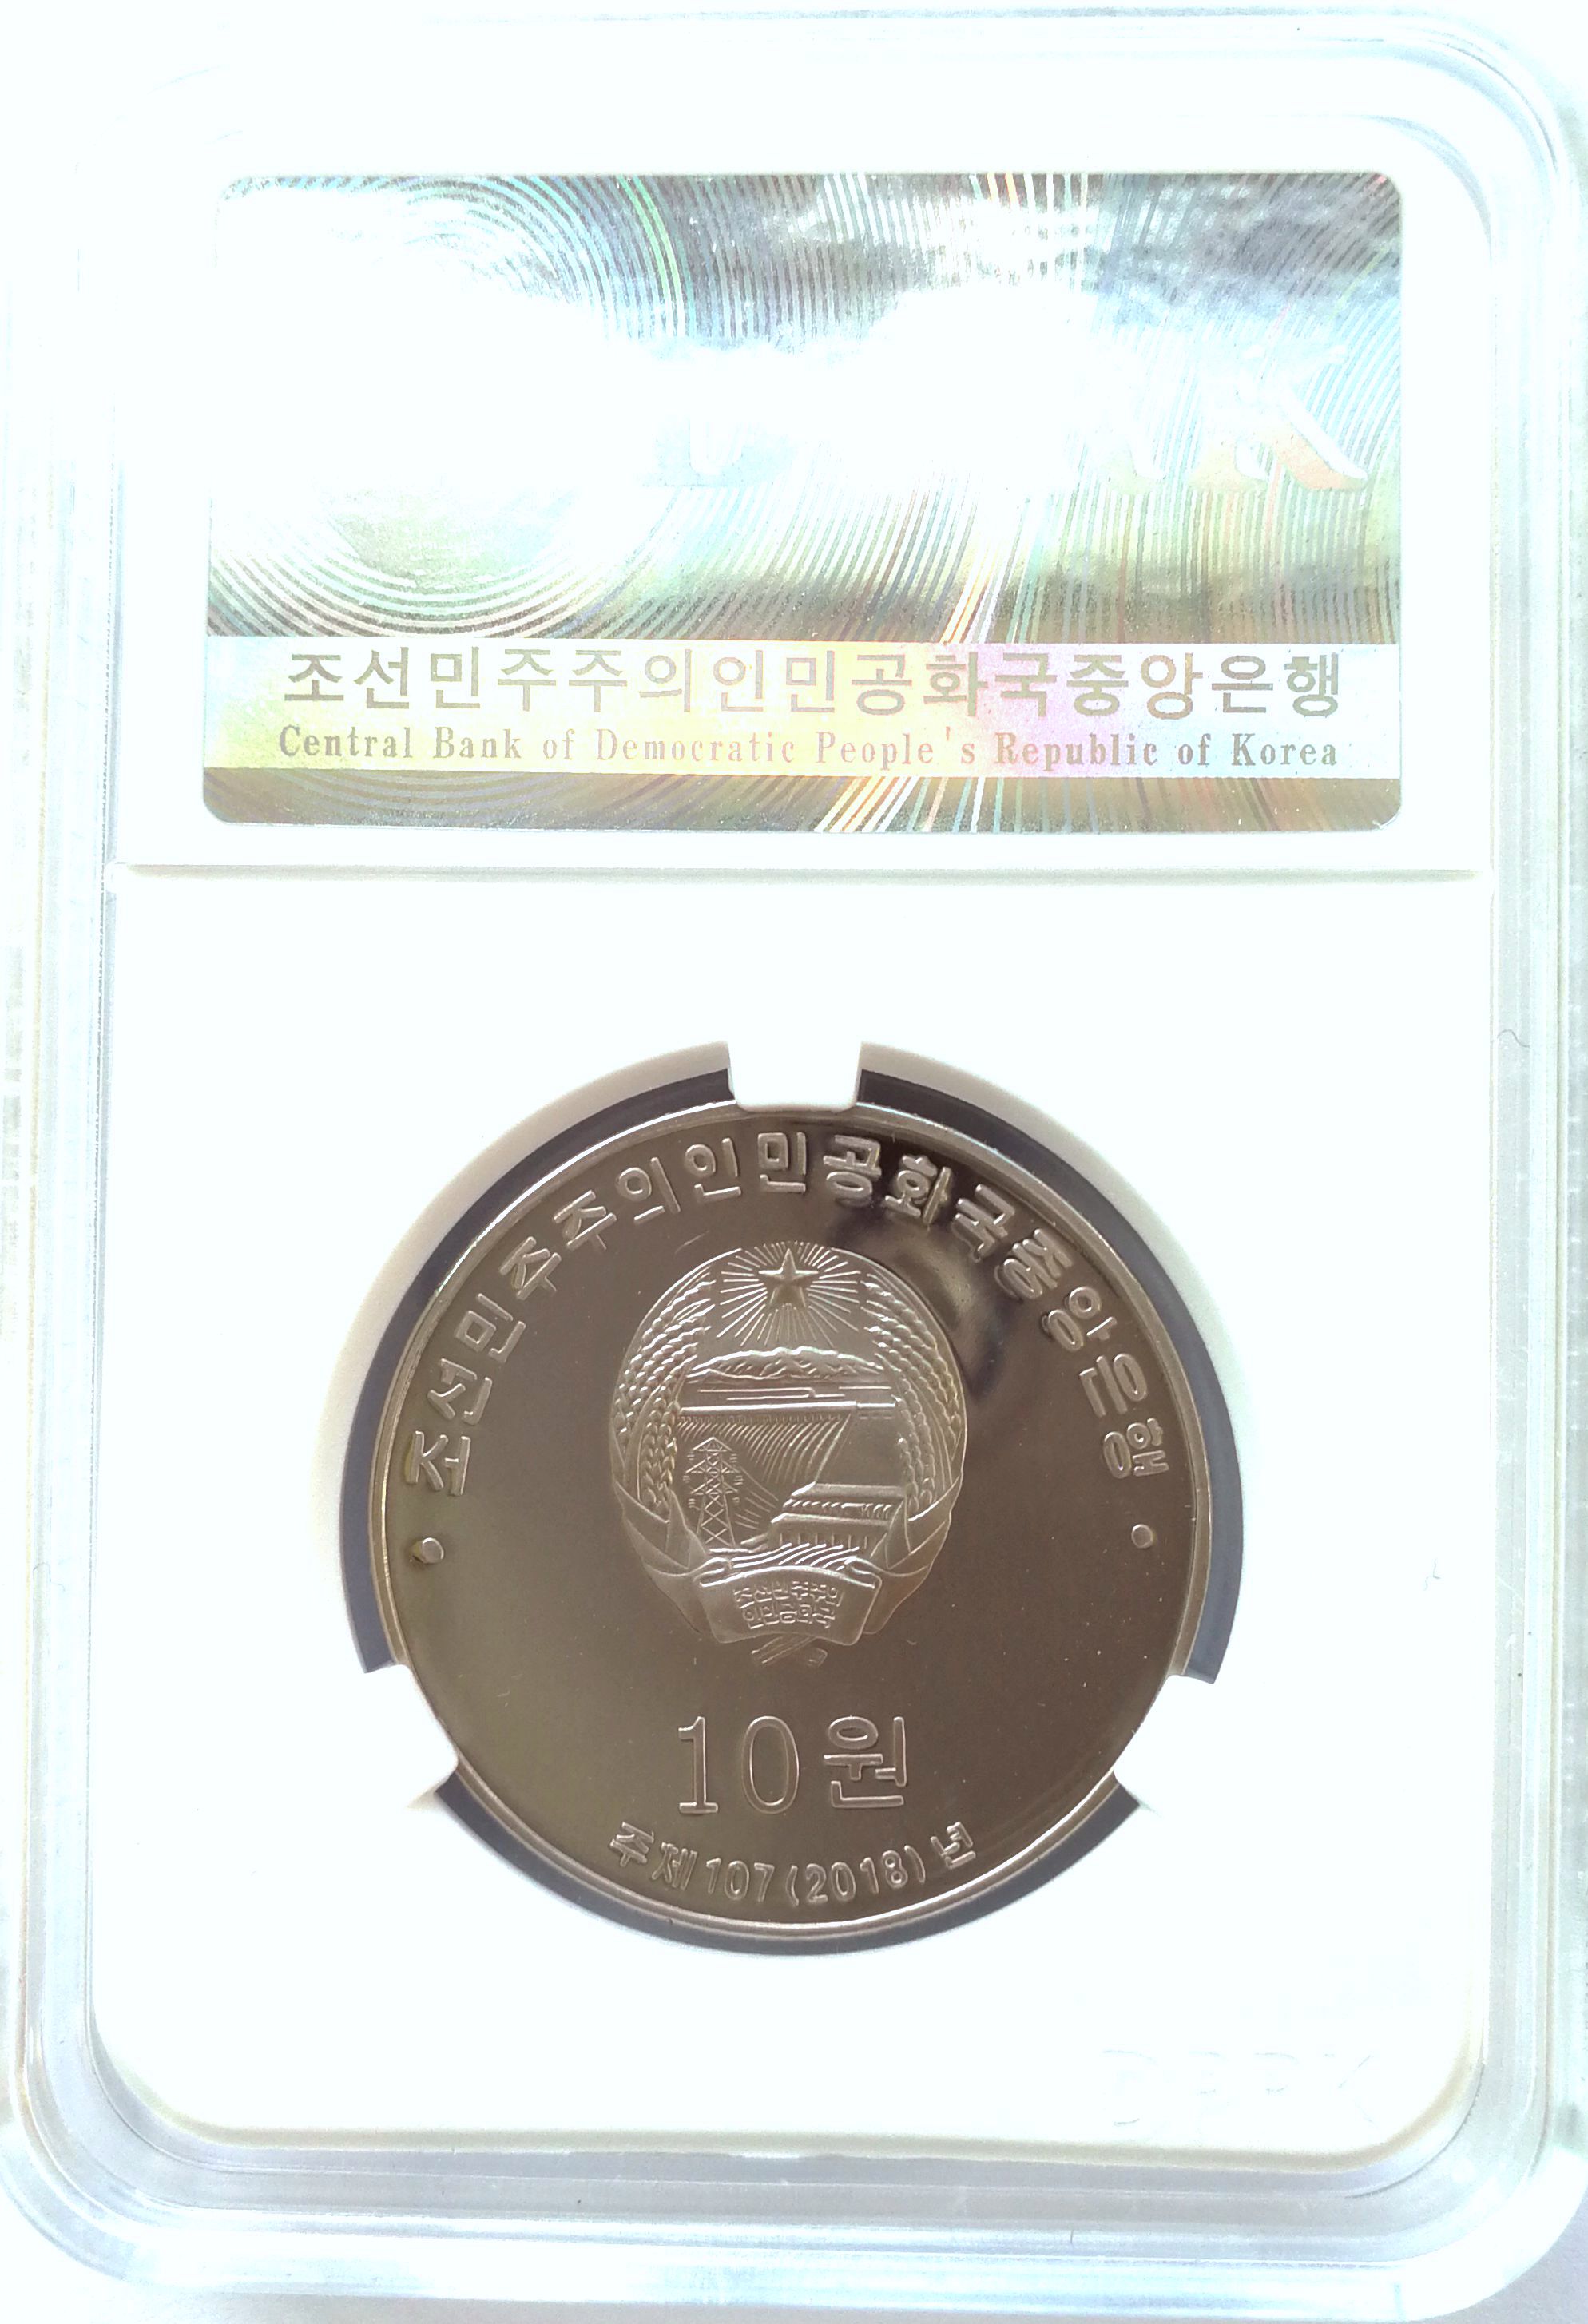 L3364, Korea "30th Anni. of Commemorative Coins" Nickle Coin 2018, Korean Grade